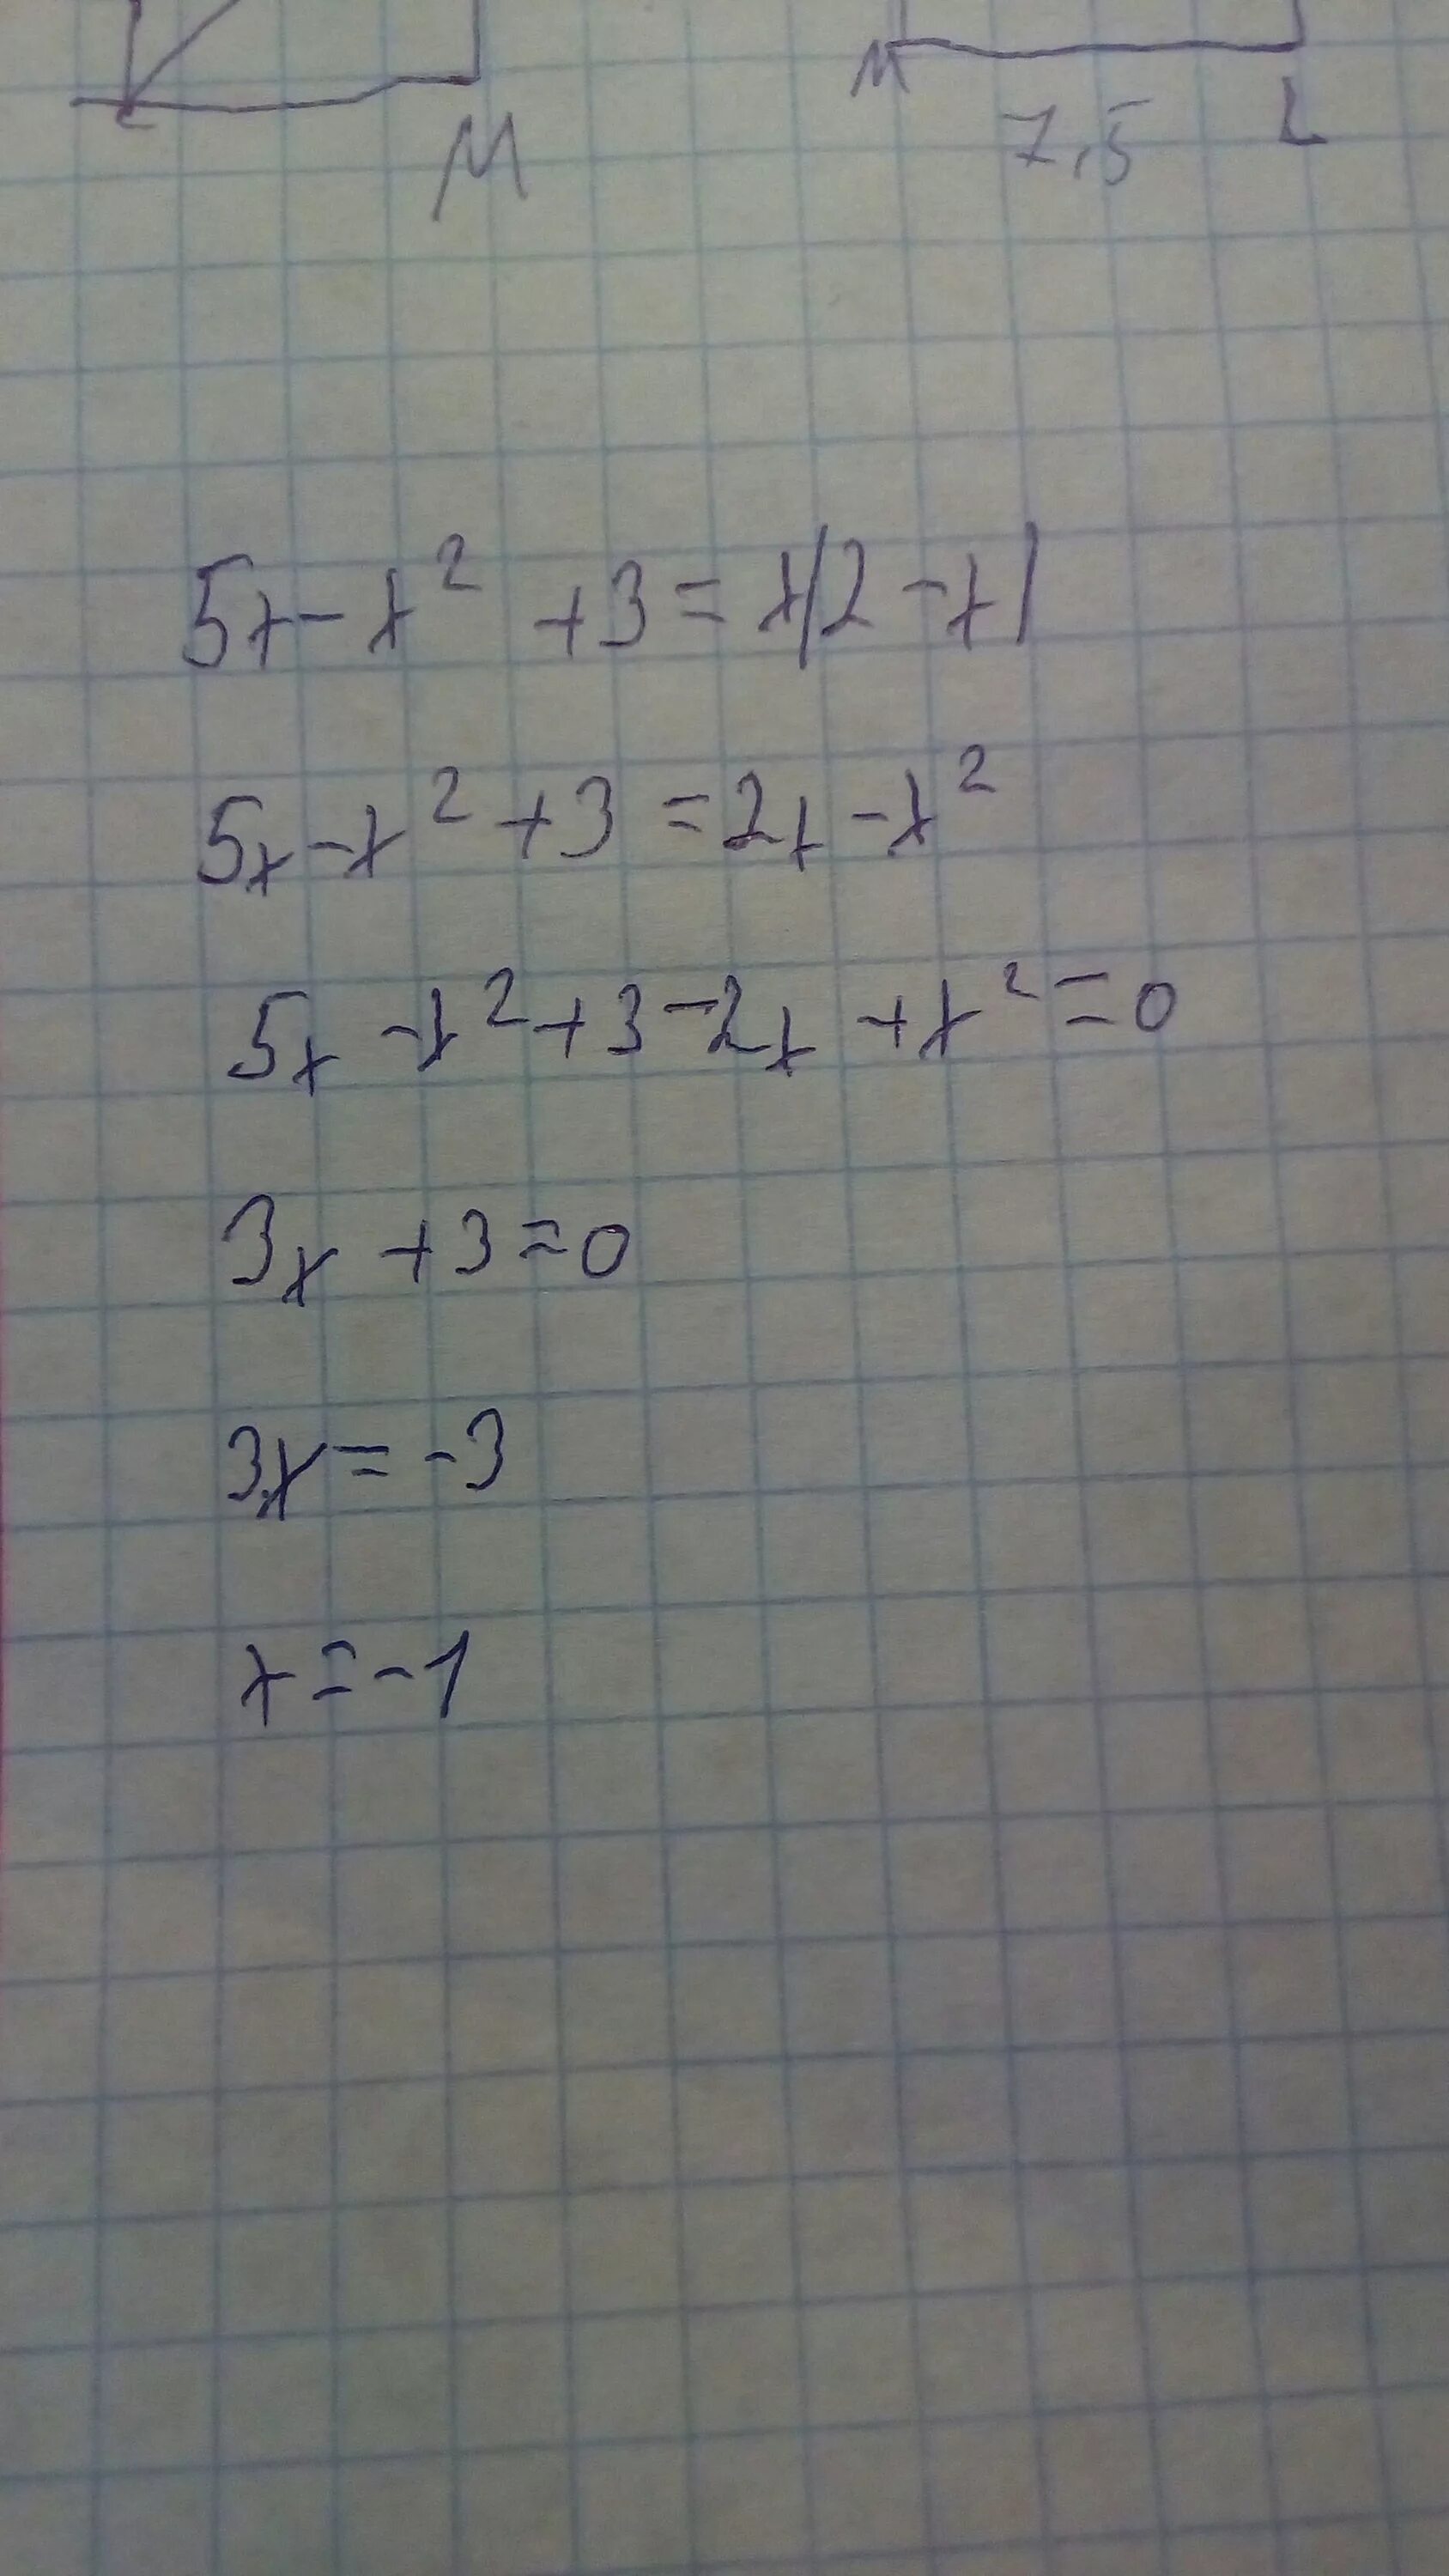 X во второй x в третий. 3x во второй степени. 2x во второй степени. X В 3 степени x во 2 степени. 5x во второй степени -3x = 0.